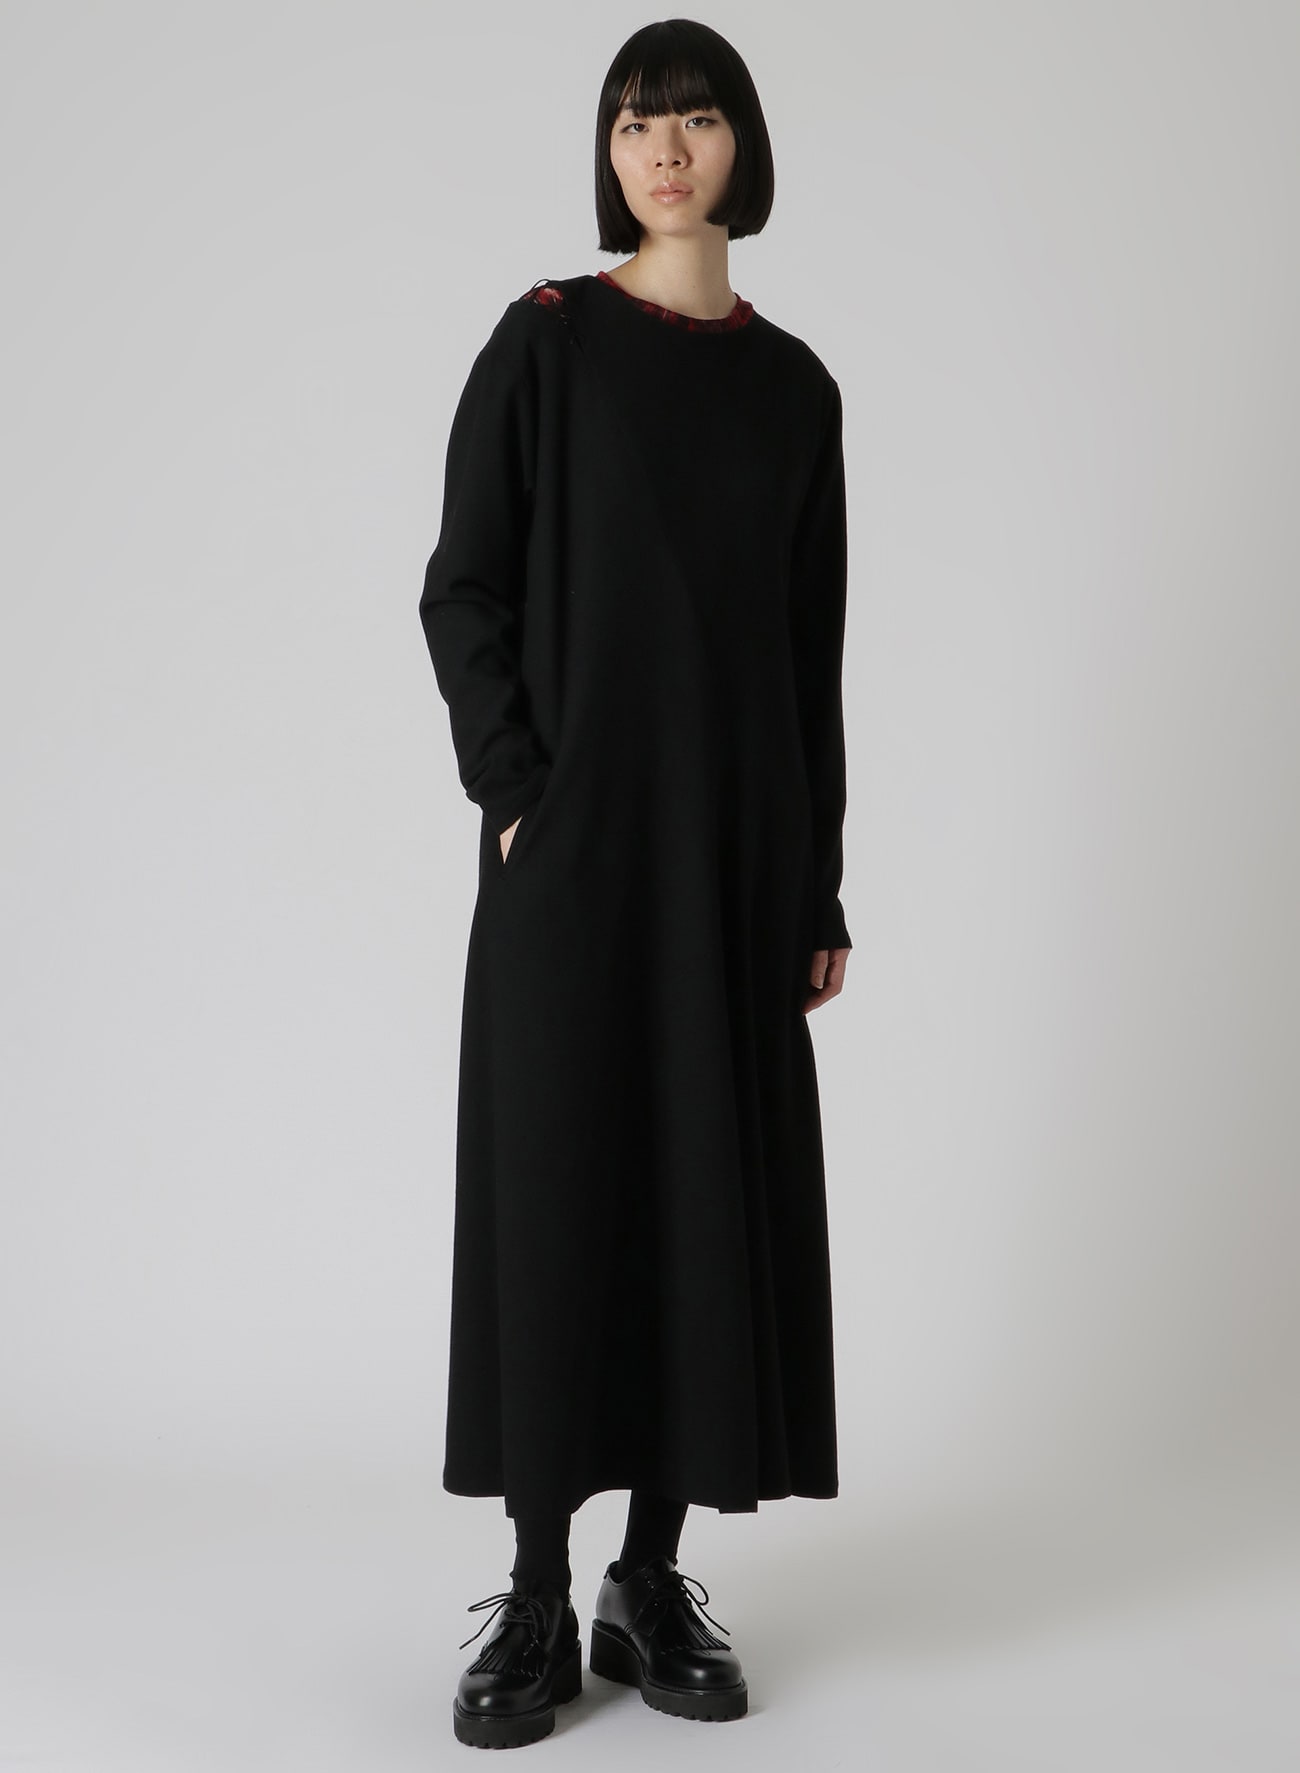 WOOL FLANNEL LACE-UP SHOULDER DETAIL DRESS(XS Black): Vintage 1.2 ...